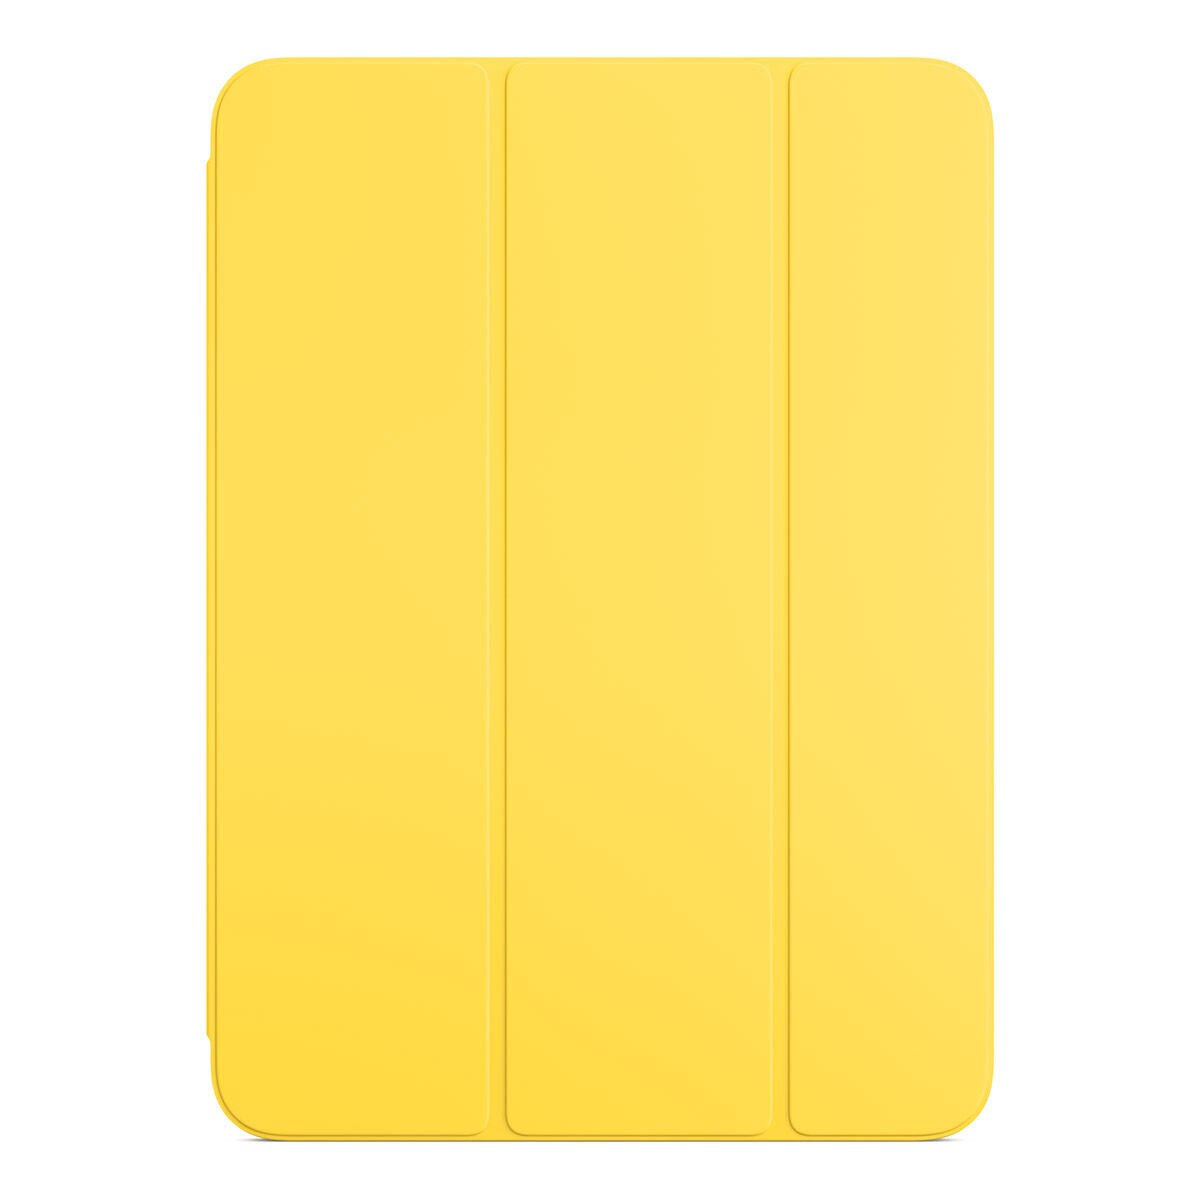 聰穎雙面夾 適用於 iPad 10.9 吋 (第10代) 檸檬黃色